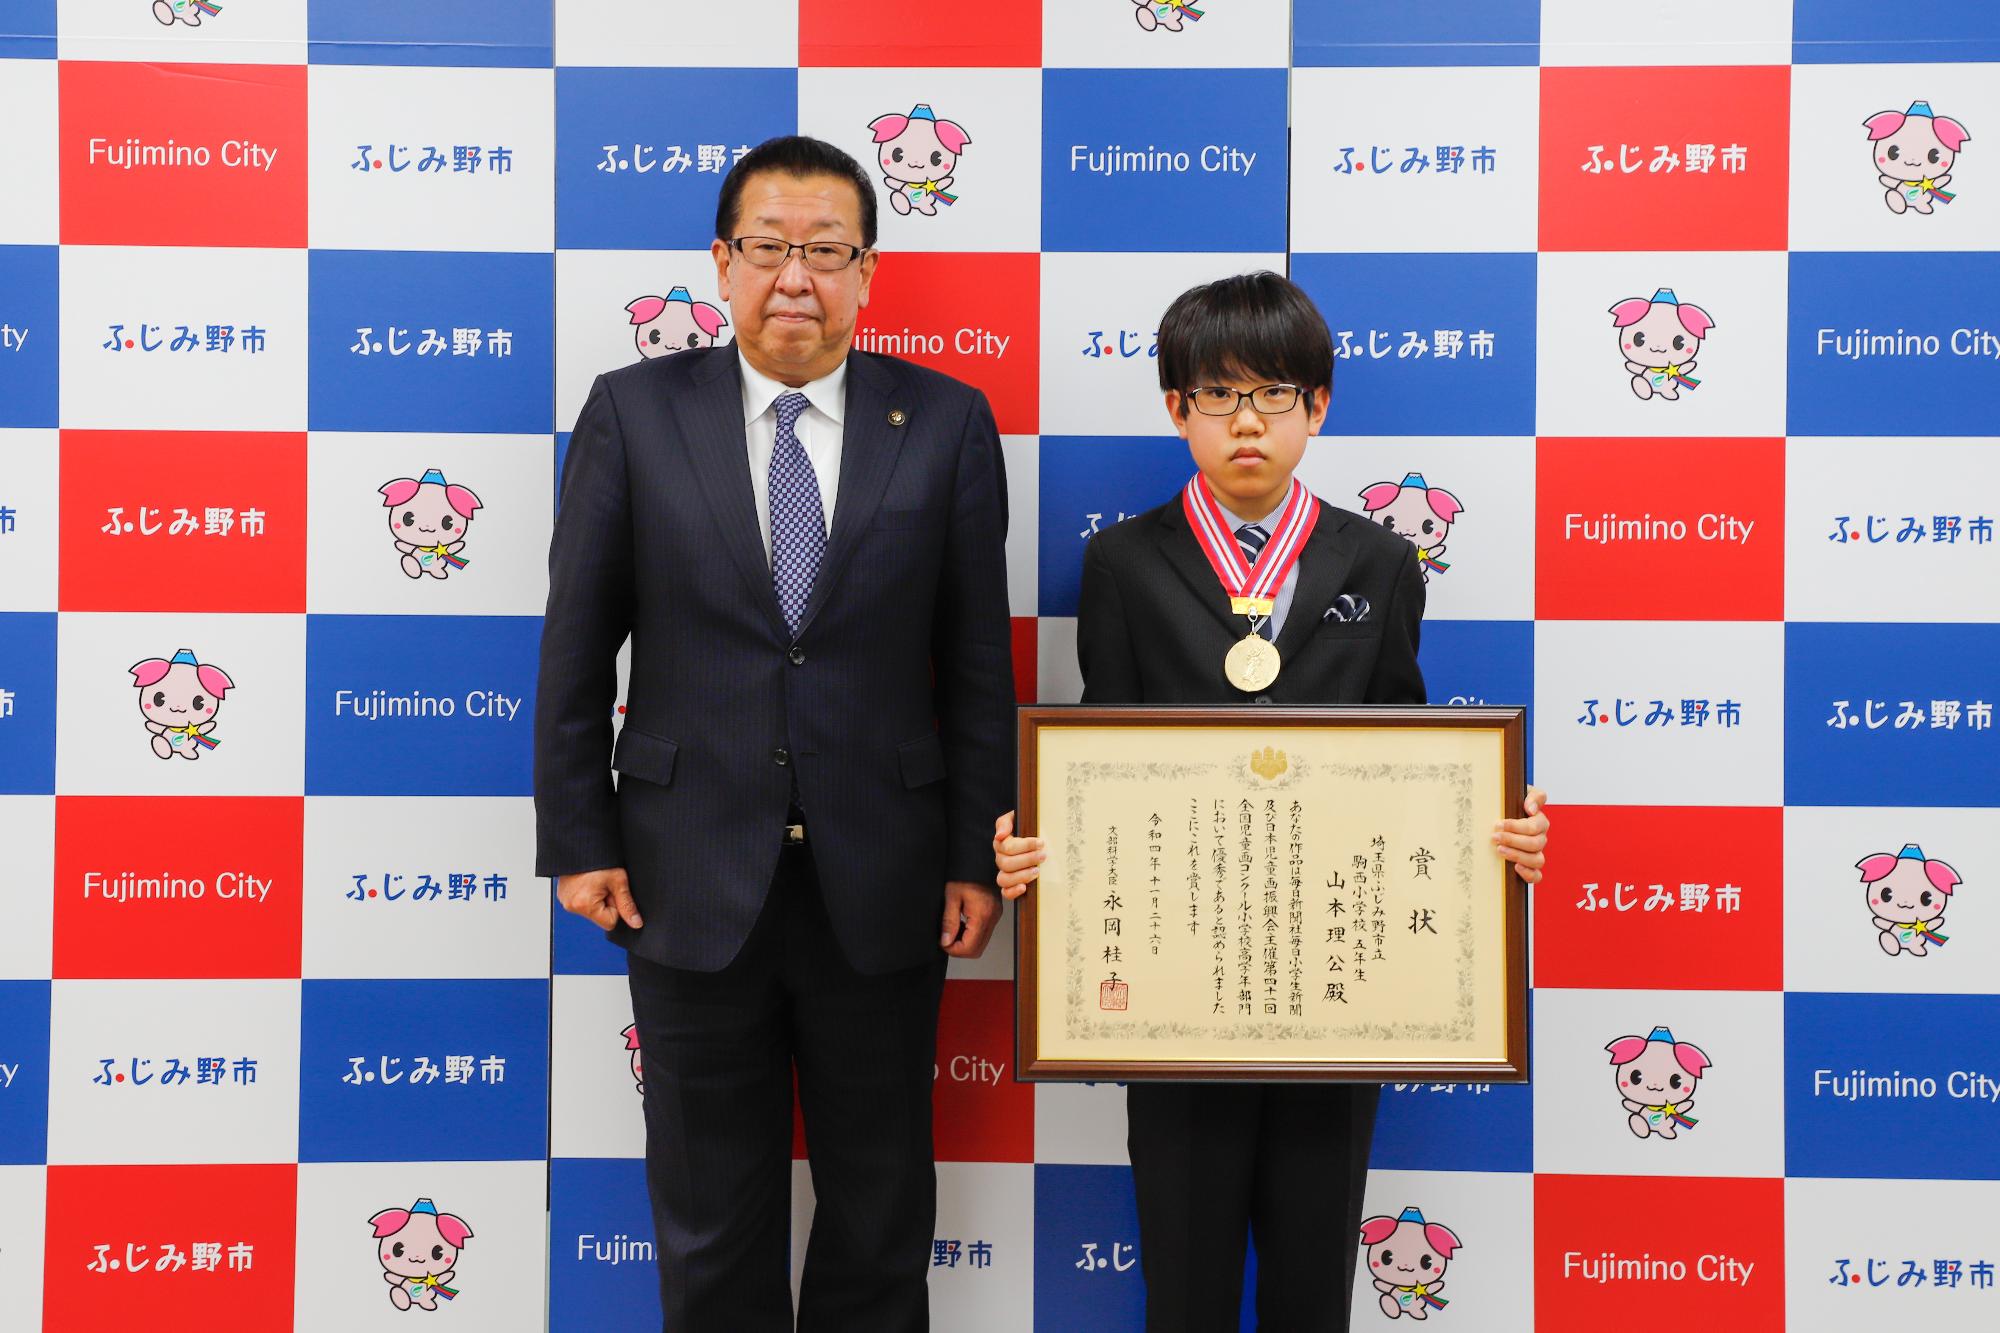 第41回全国児童画コンクールで文部科学大臣賞を受賞された山本さん